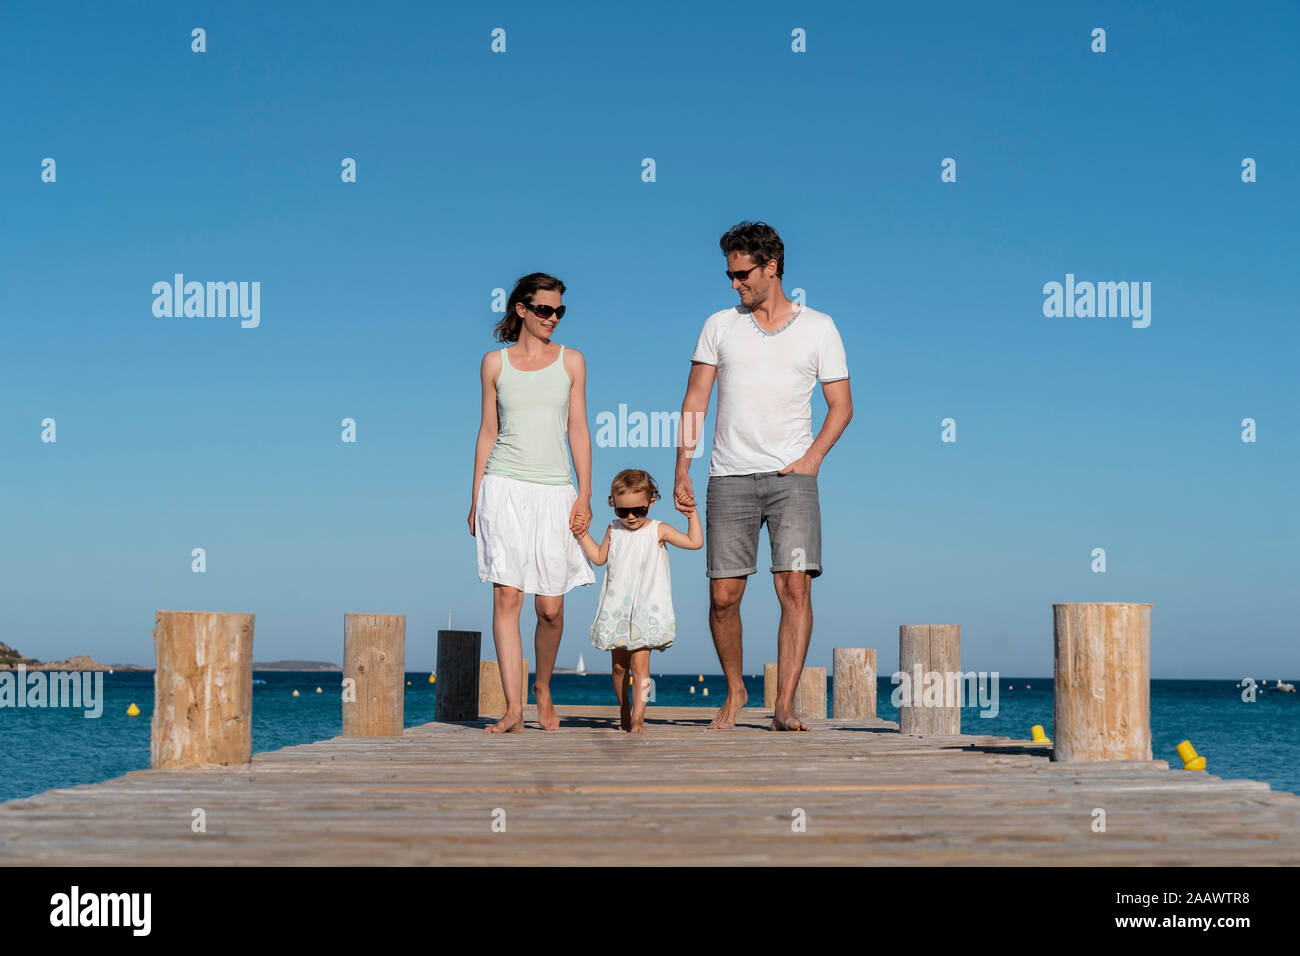 Balades en famille sur une jetée à la mer Banque D'Images